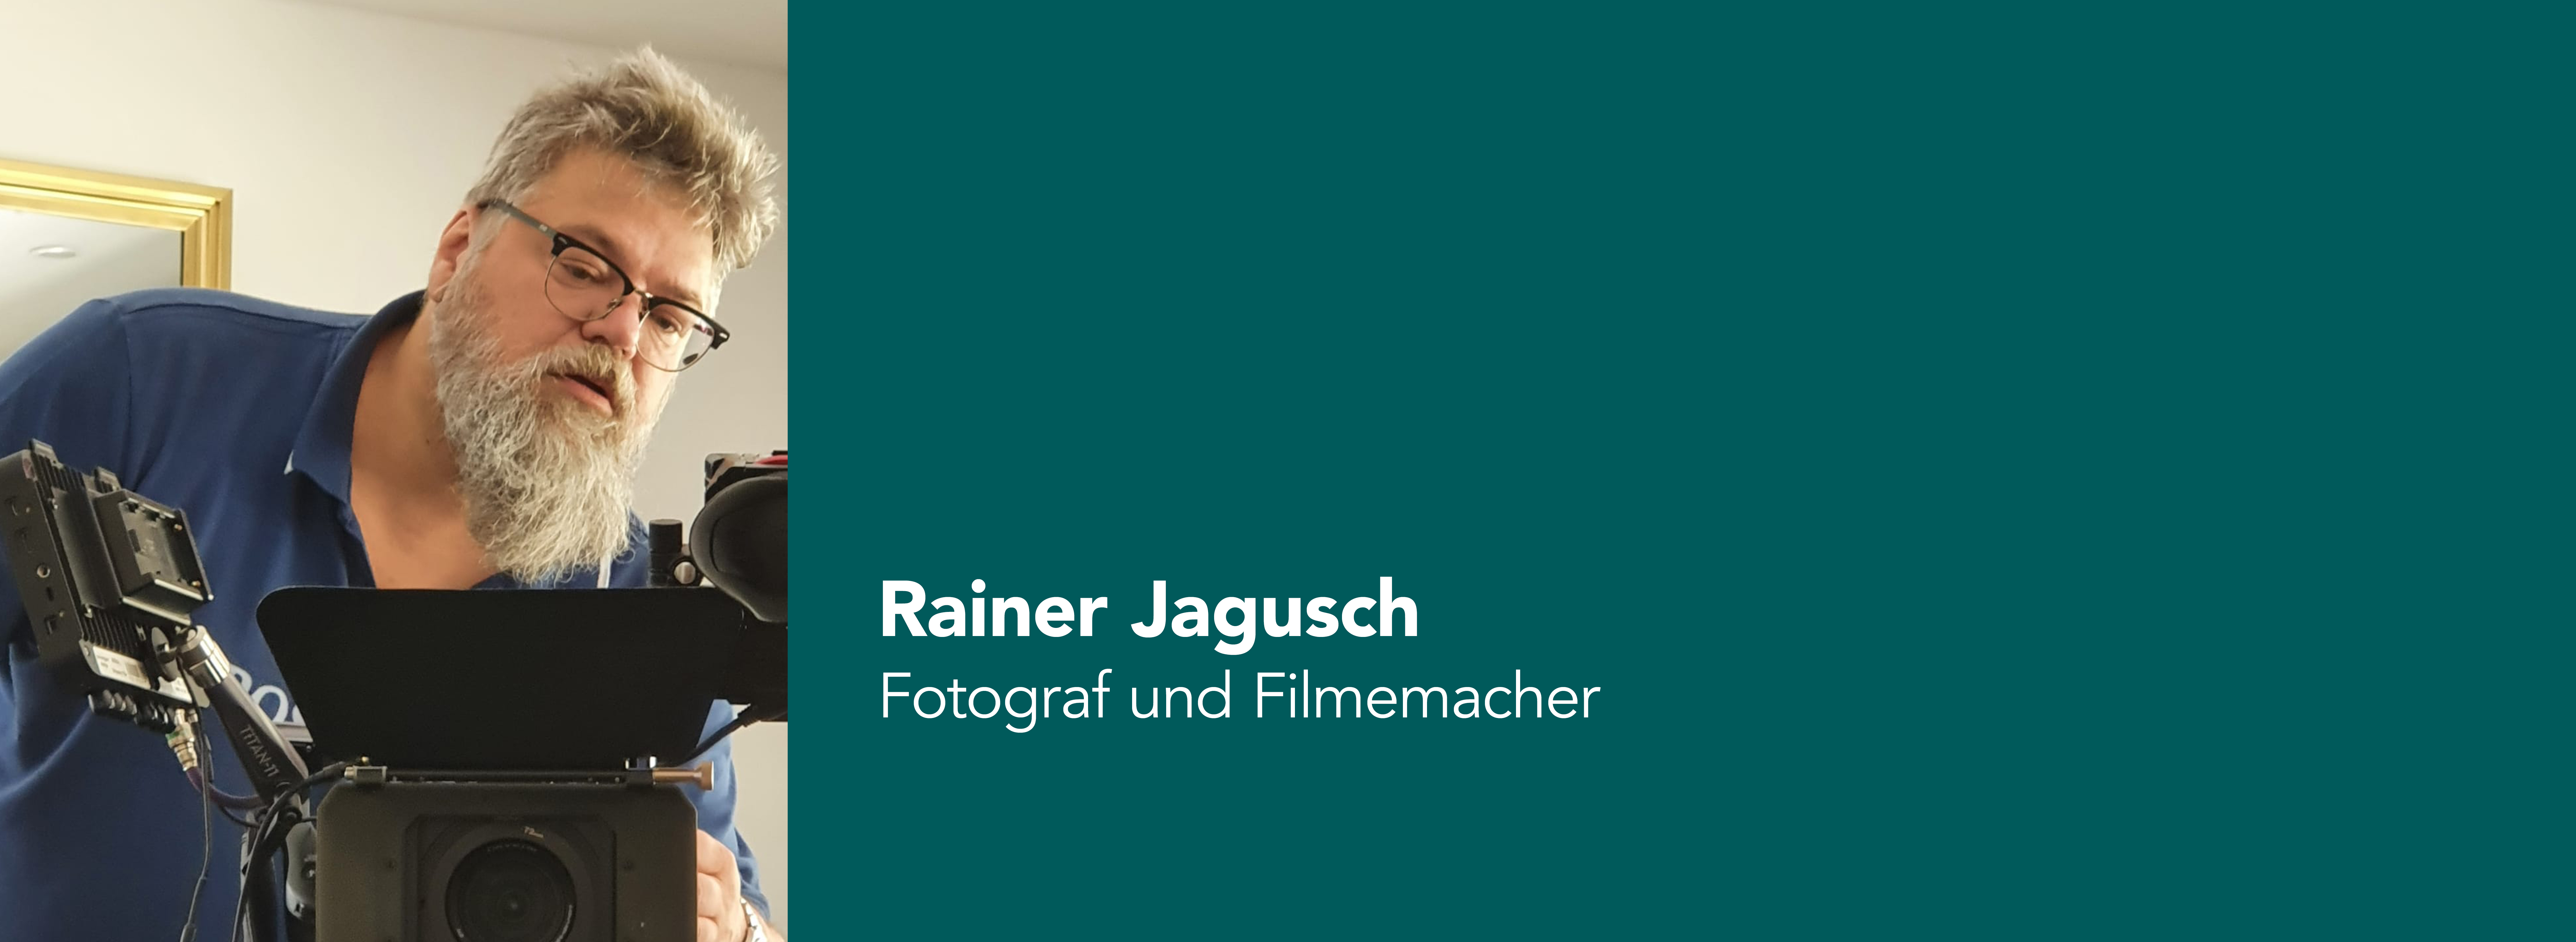 Das Bild zeigt Rainer Jagusch, einen Fotografen und Filmemacher